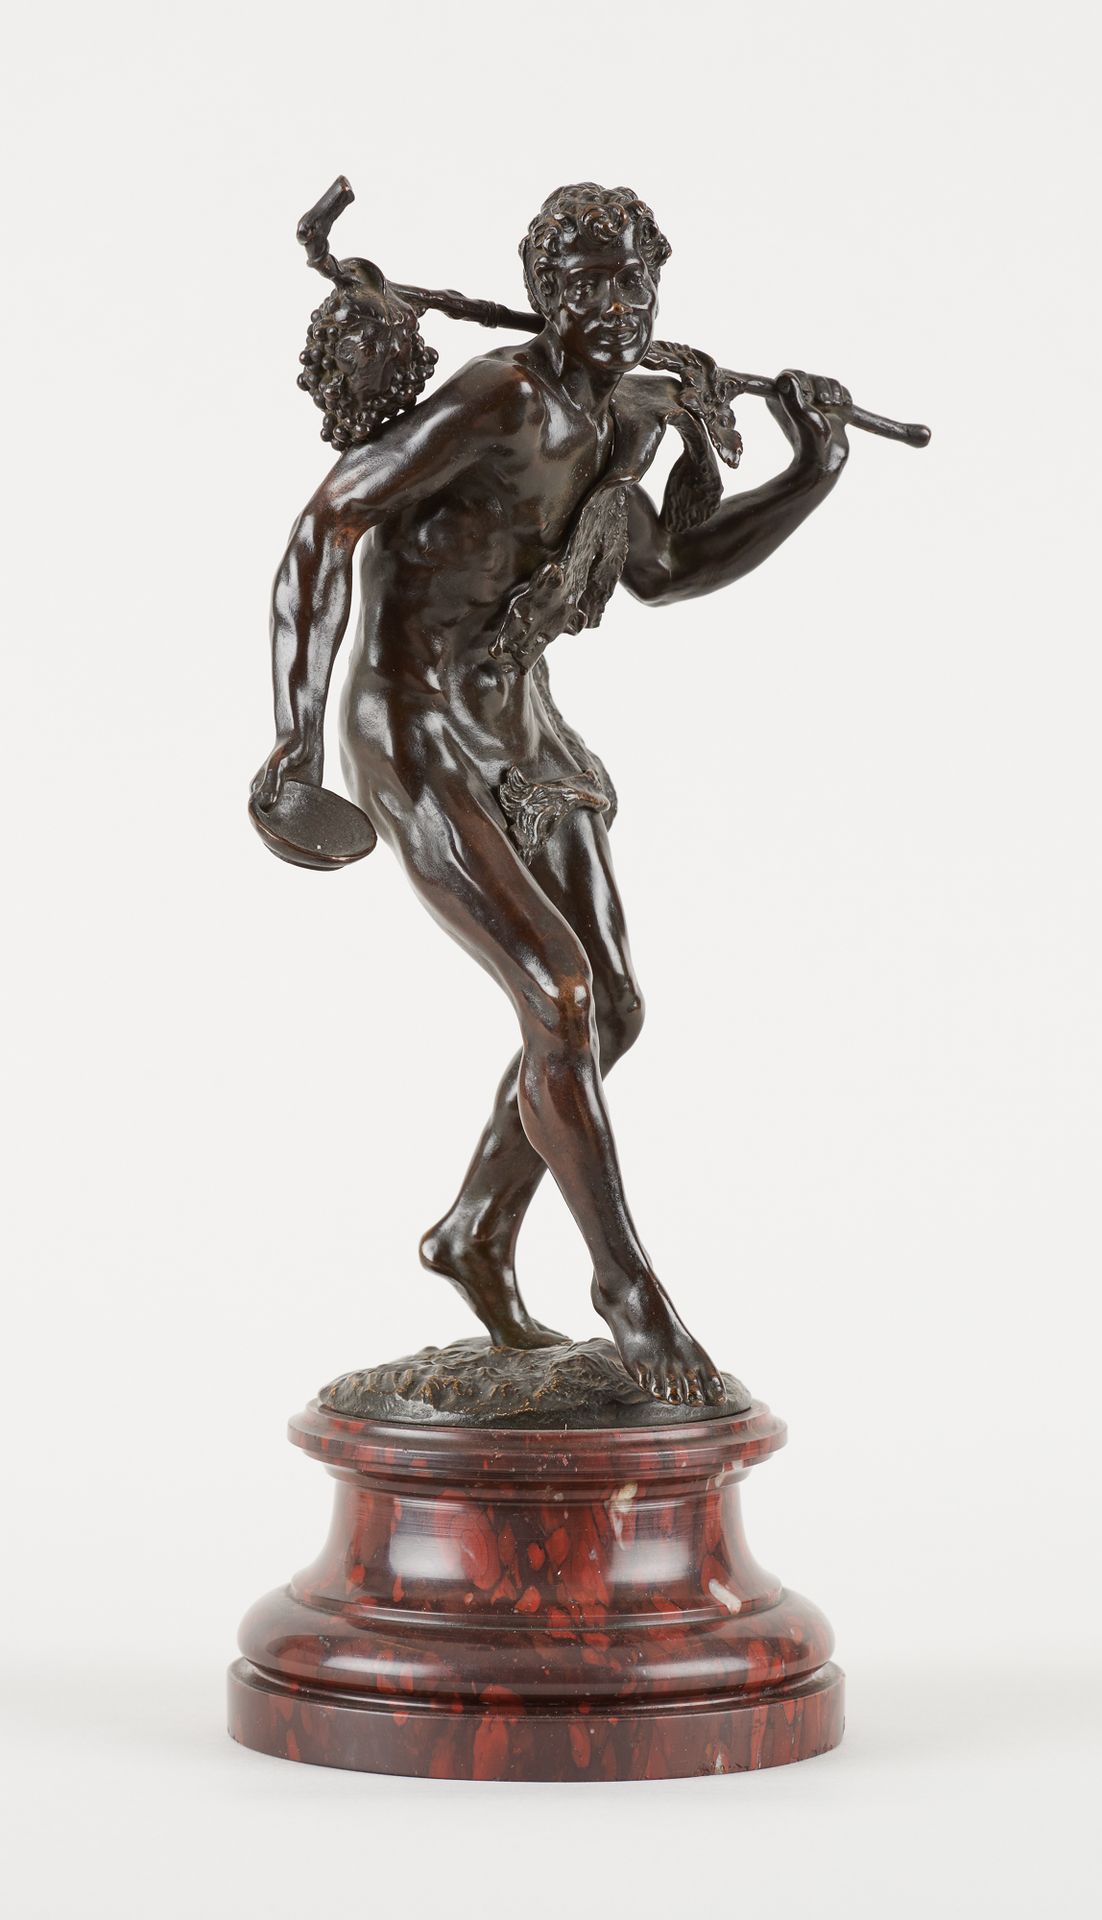 Travail du 19e. Bronzeskulptur mit dunkler Patina: Bacchus, jung, schreitend.

(&hellip;